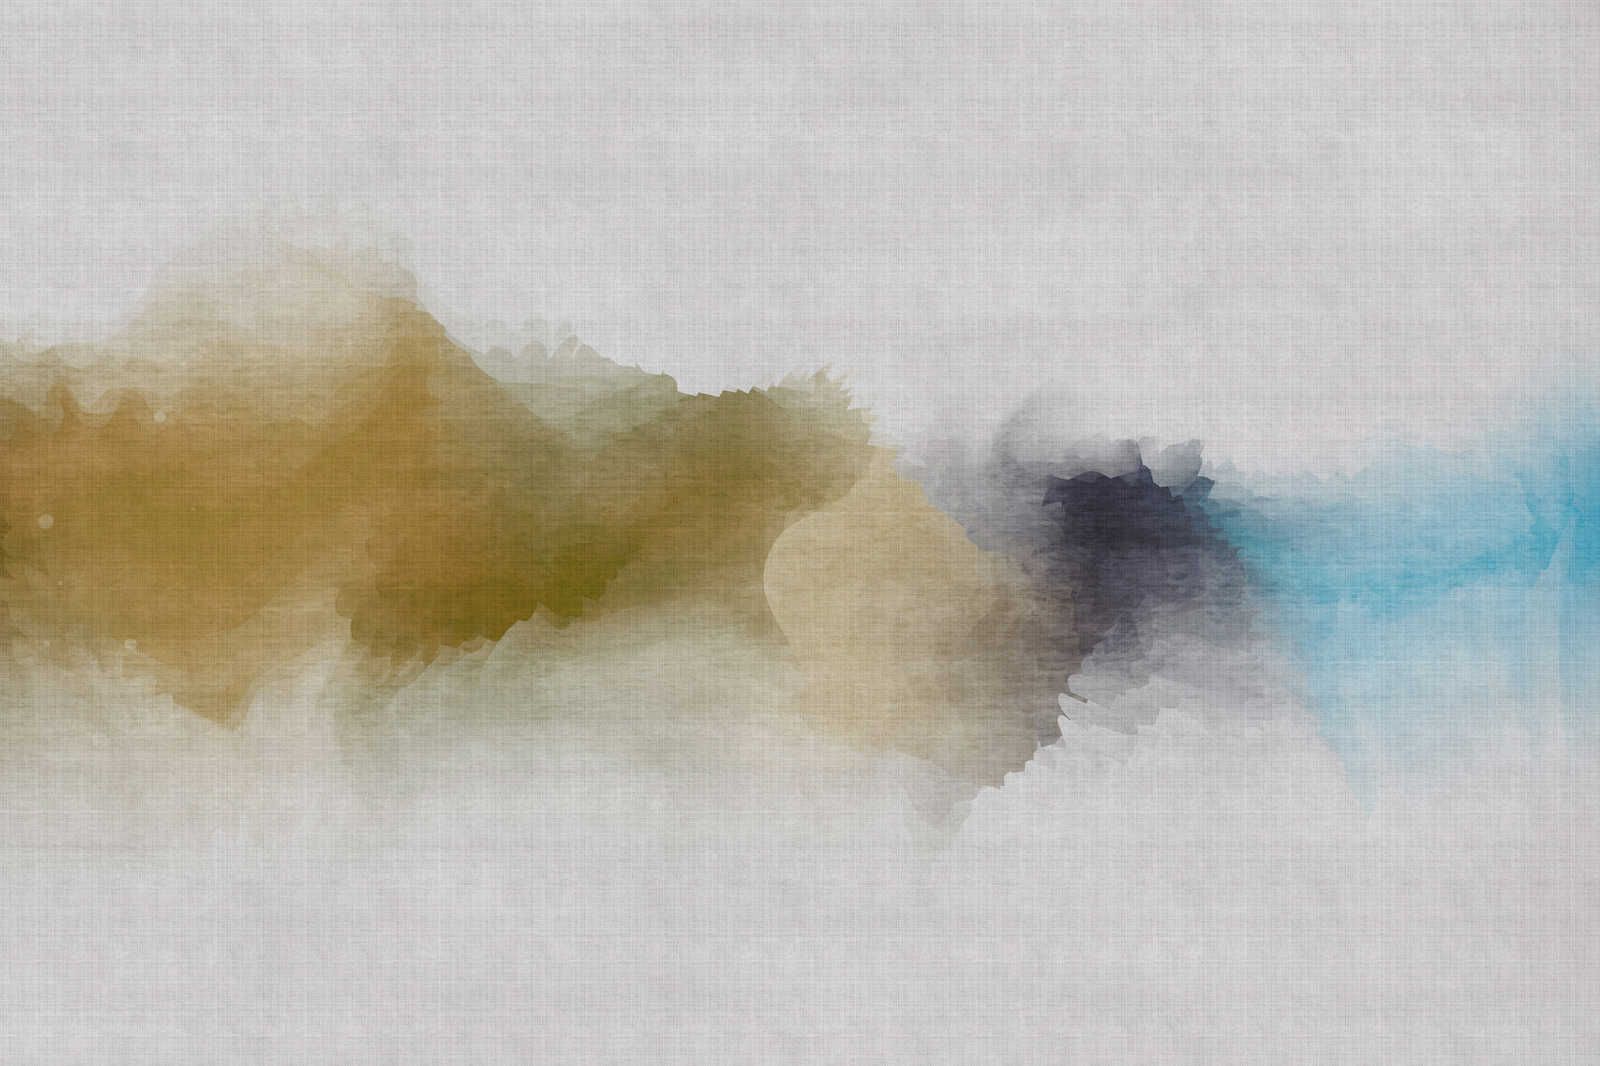             Daydream 3 - Leinwandbild wolkiges Aquarell-Muster- Naturleinen Optik – 1,20 m x 0,80 m
        